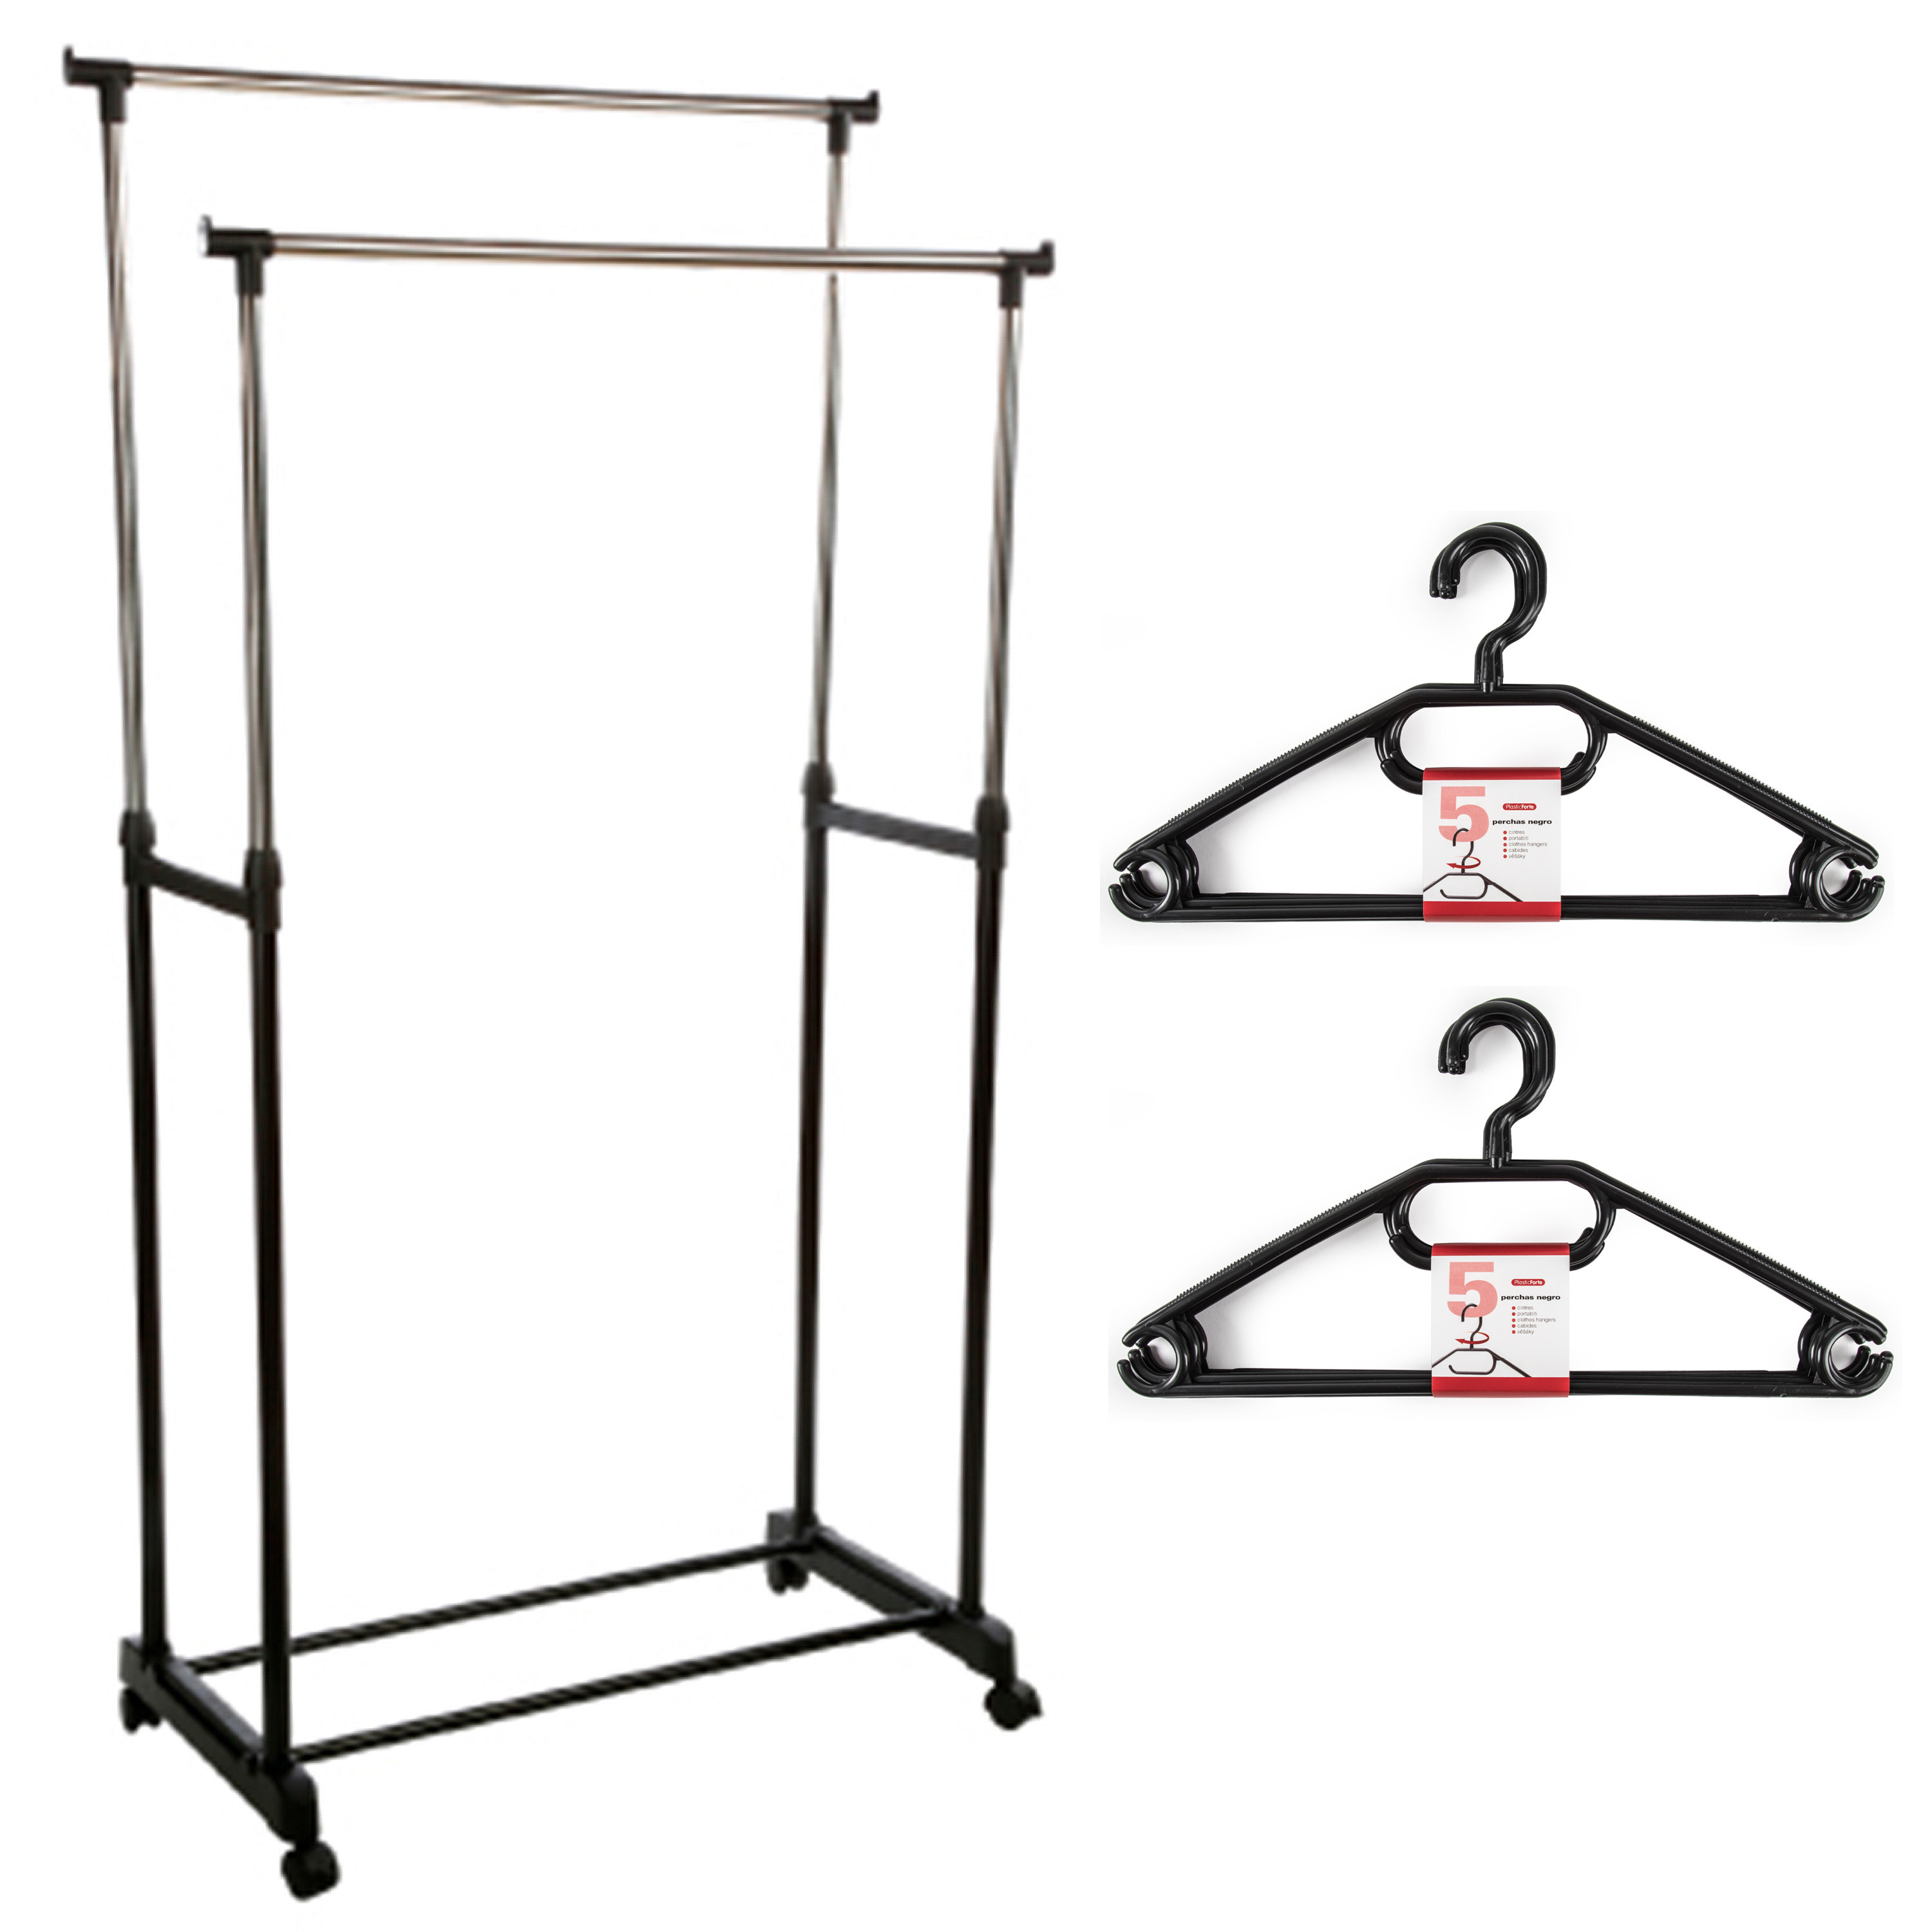 Kledingrek met kleding hangers dubbele stang kunststof zwart 80 x 42 x 170 cm